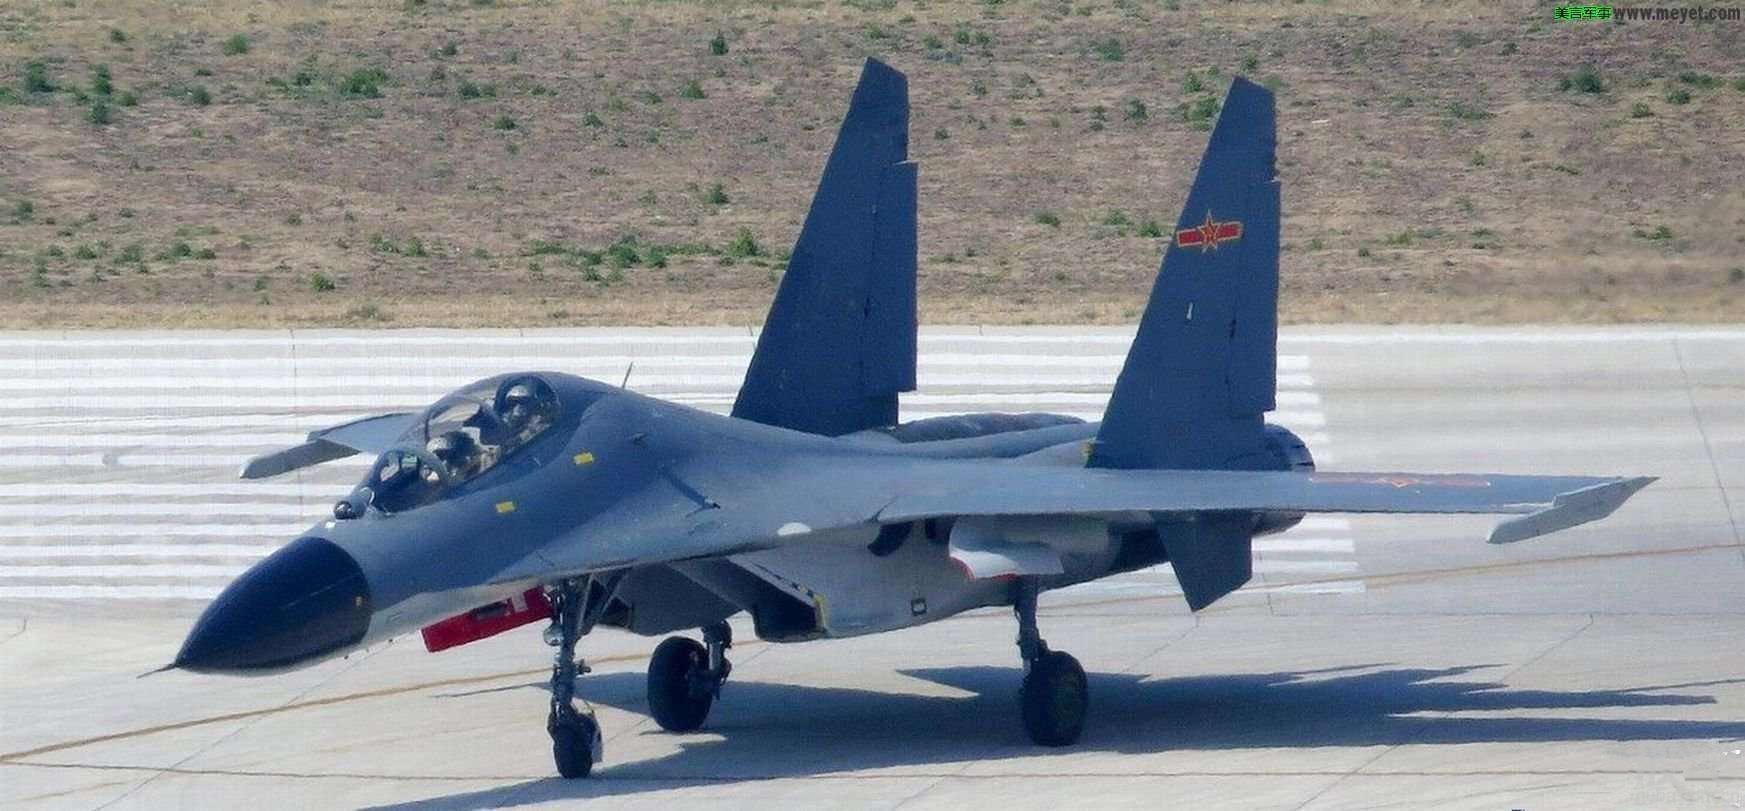 台湾在与北京分歧的背景下推出新的F-16V战机 - 2021年11月19日, 俄罗斯卫星通讯社